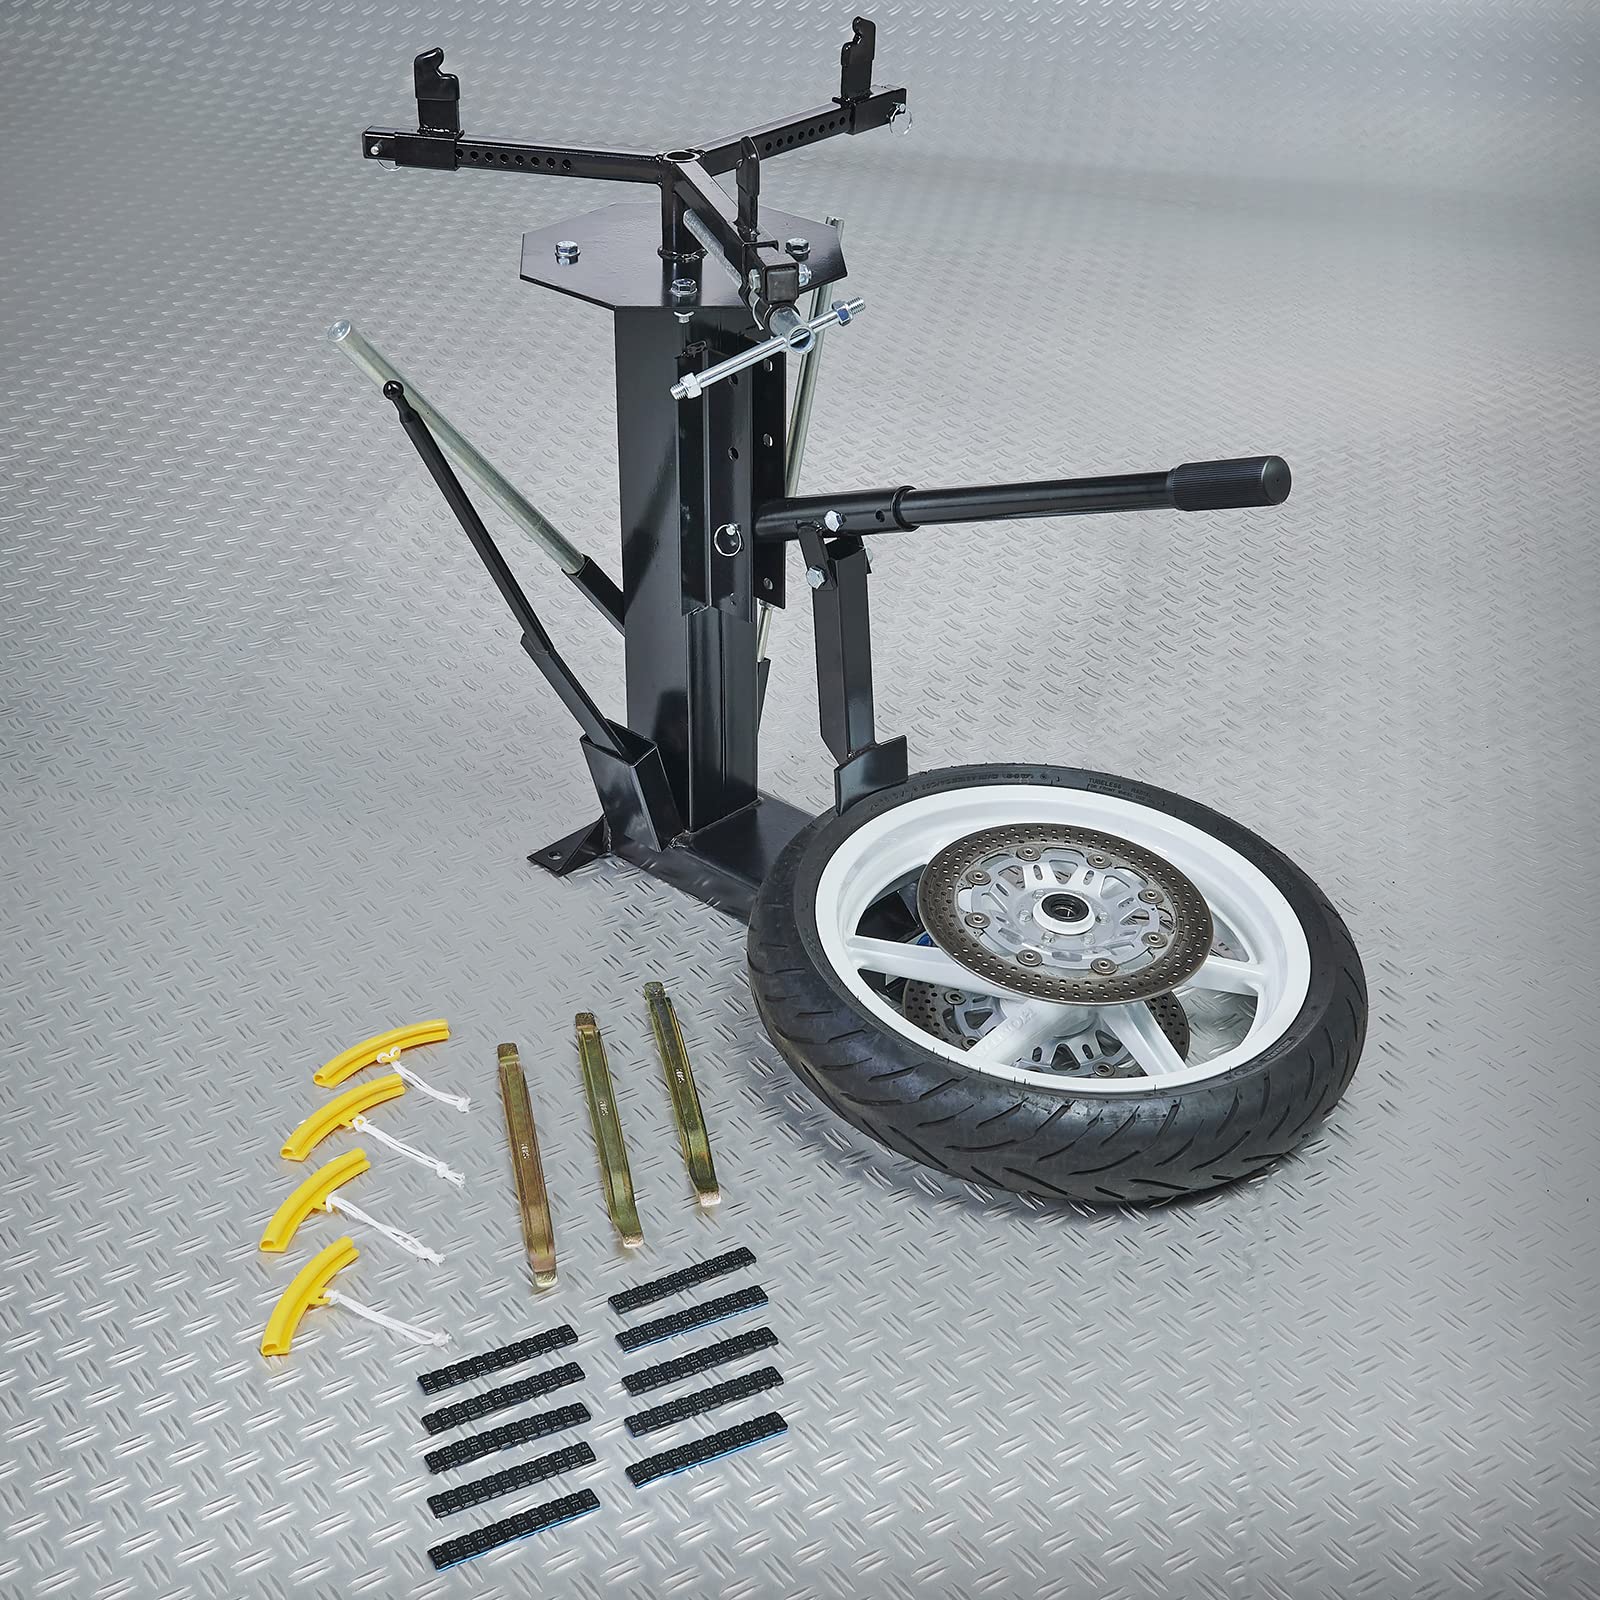 Datona Reifenmontage Kombivorteil: Reifenmontage Gerät für Auto- und Motorradreifen + Reifenlöffel + Felgenschutz + Klebegewichte von Datona